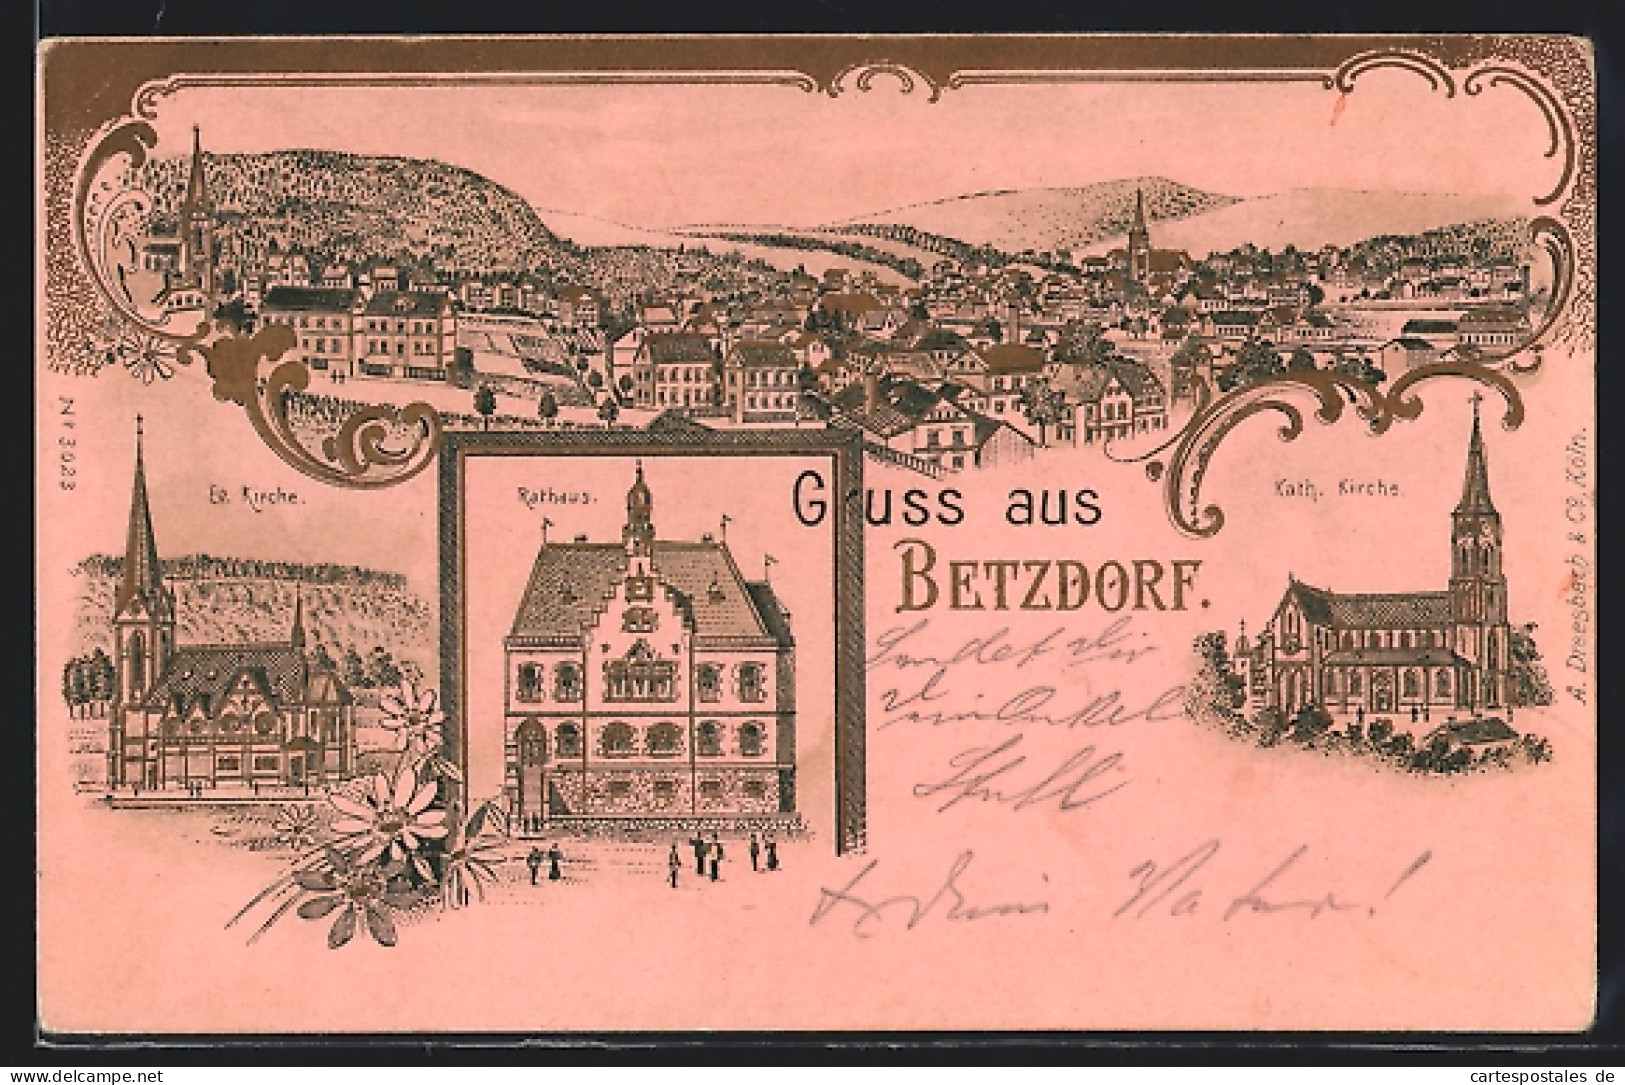 Lithographie Betzdorf, Kath. & Ev. Kirche, Rathaus, Totalansicht  - Betzdorf